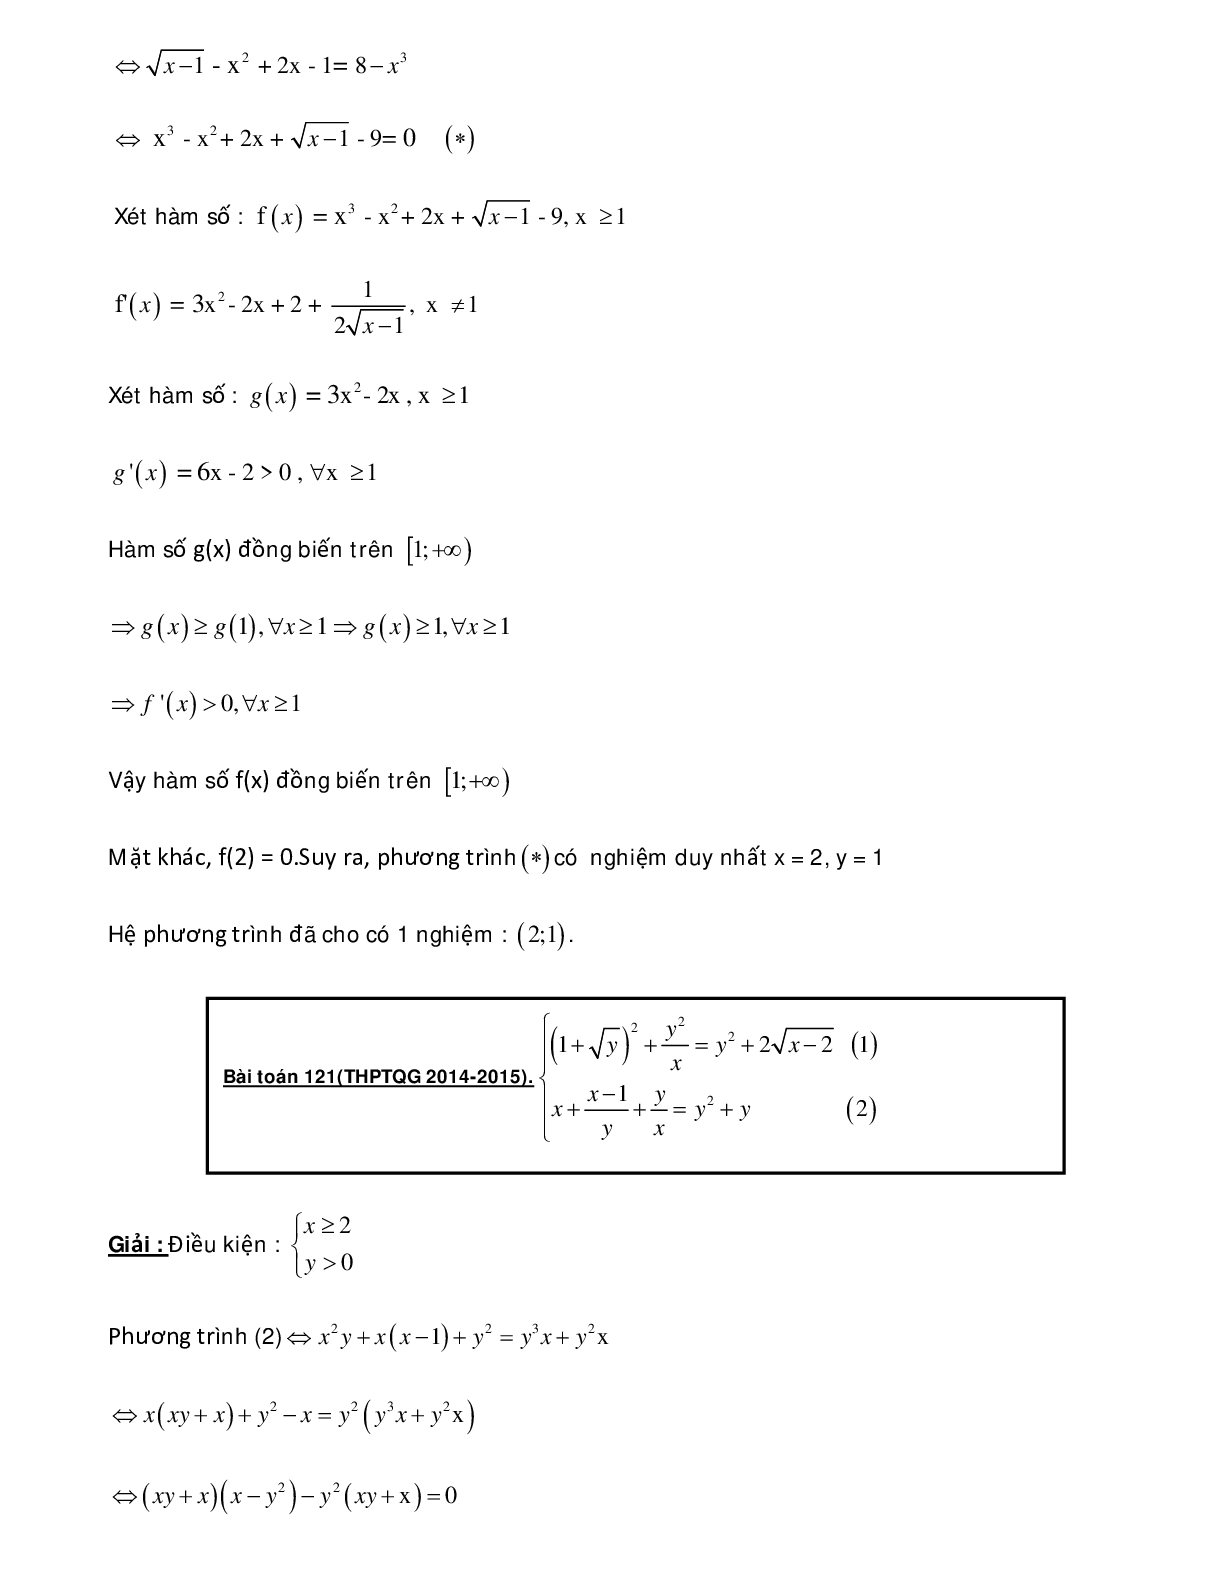 Bài tập sử dụng phương pháp hàm số để giải hệ phương trình - có đáp án chi tiết (trang 9)